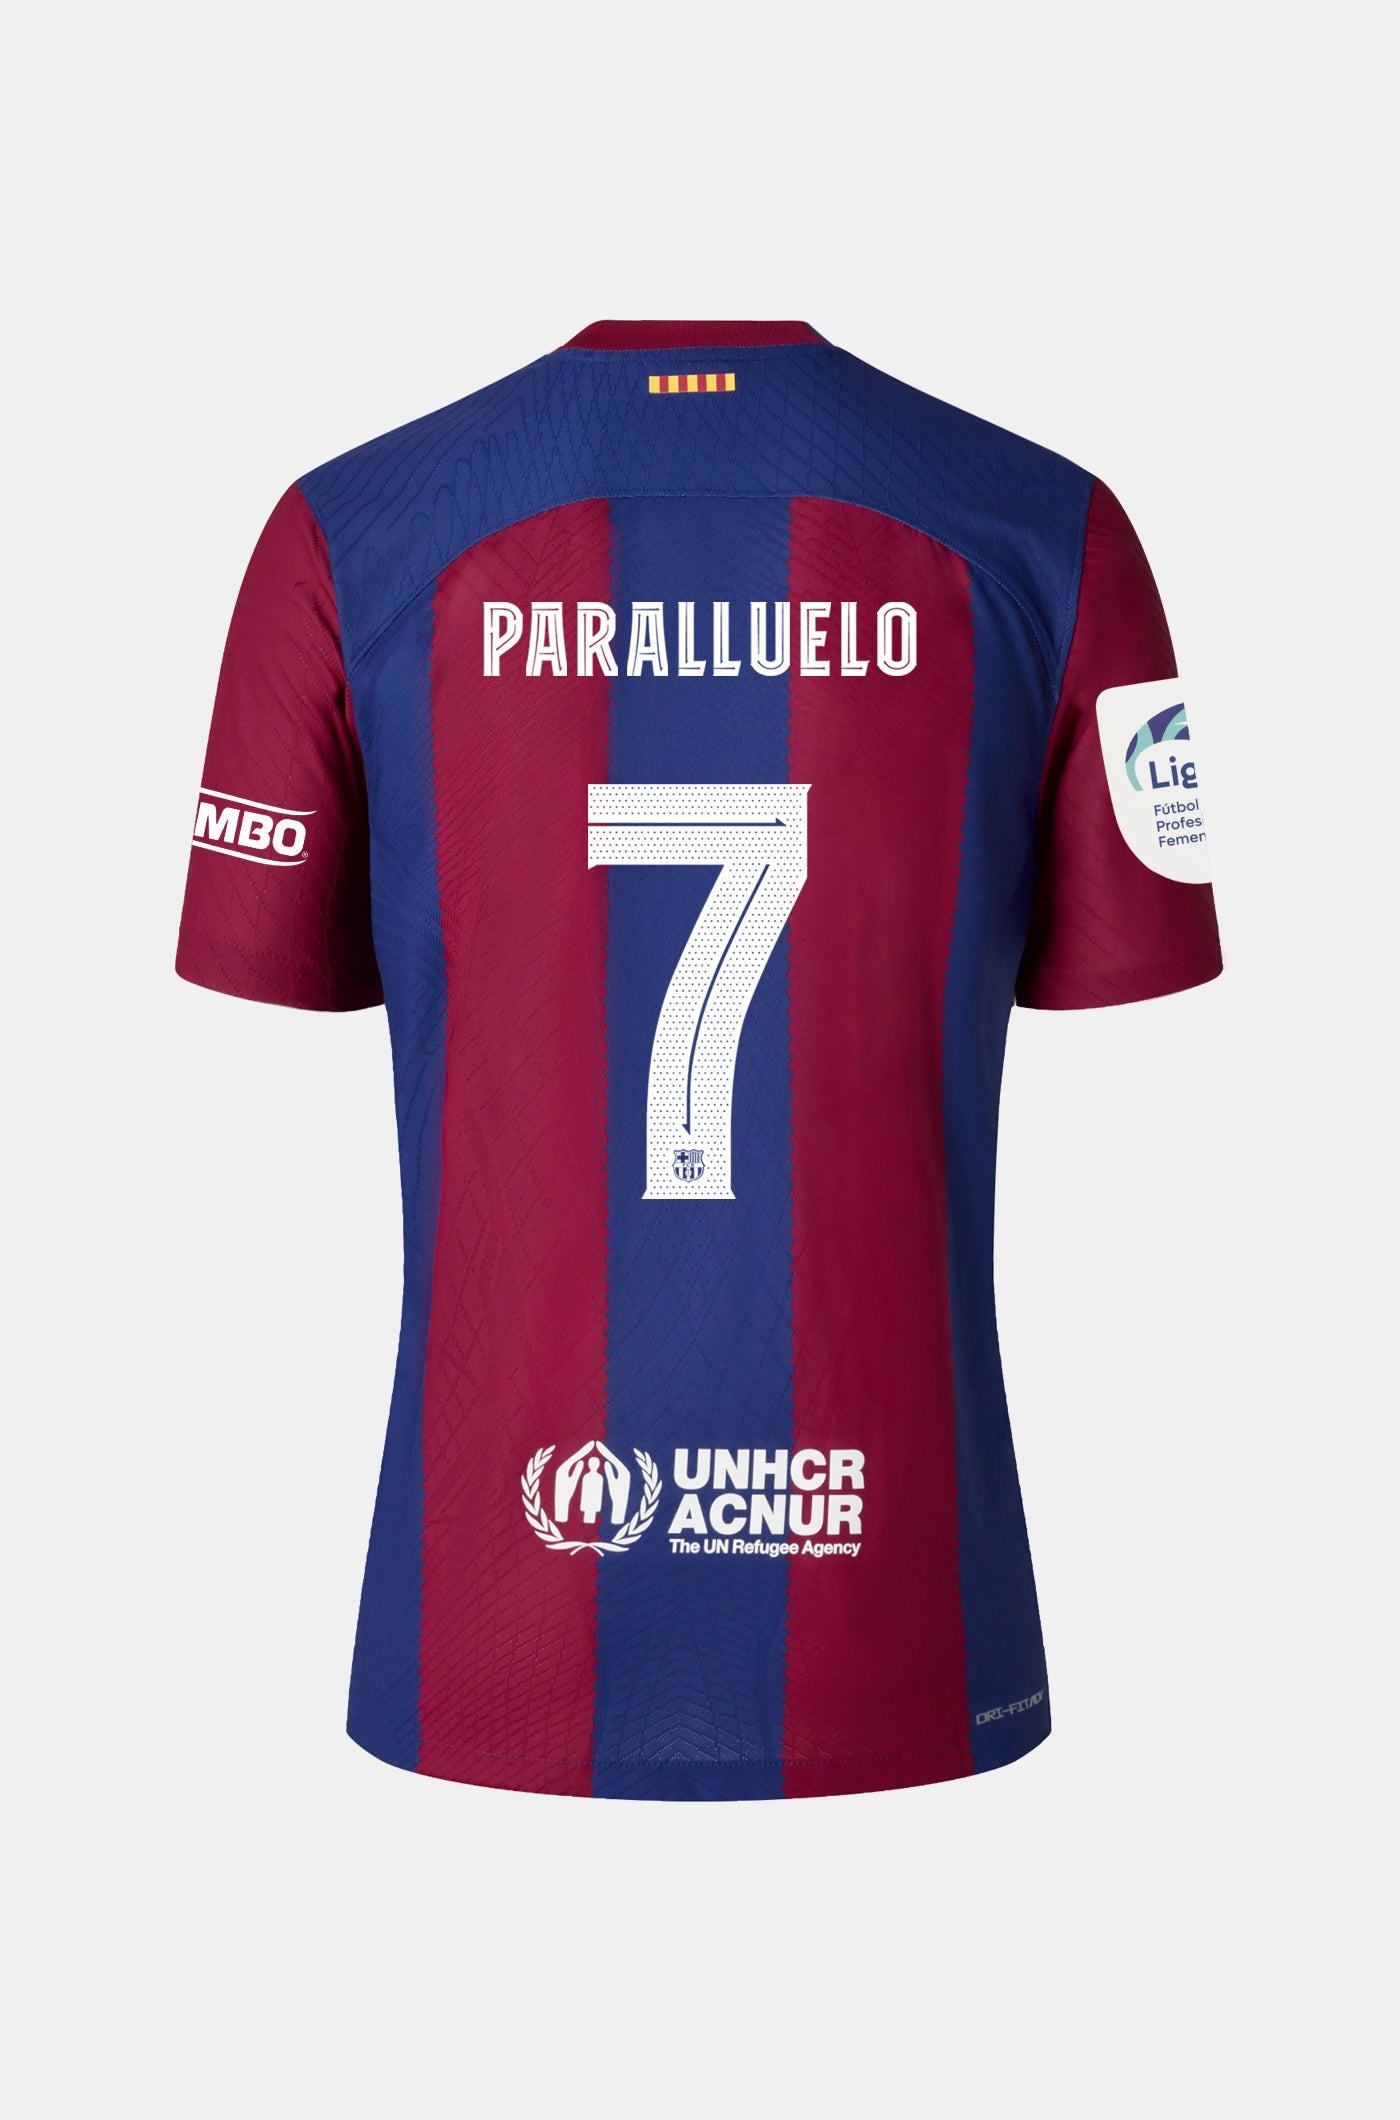 Liga F FC Barcelona home shirt 23/24 Player's Edition - PARALLUELO